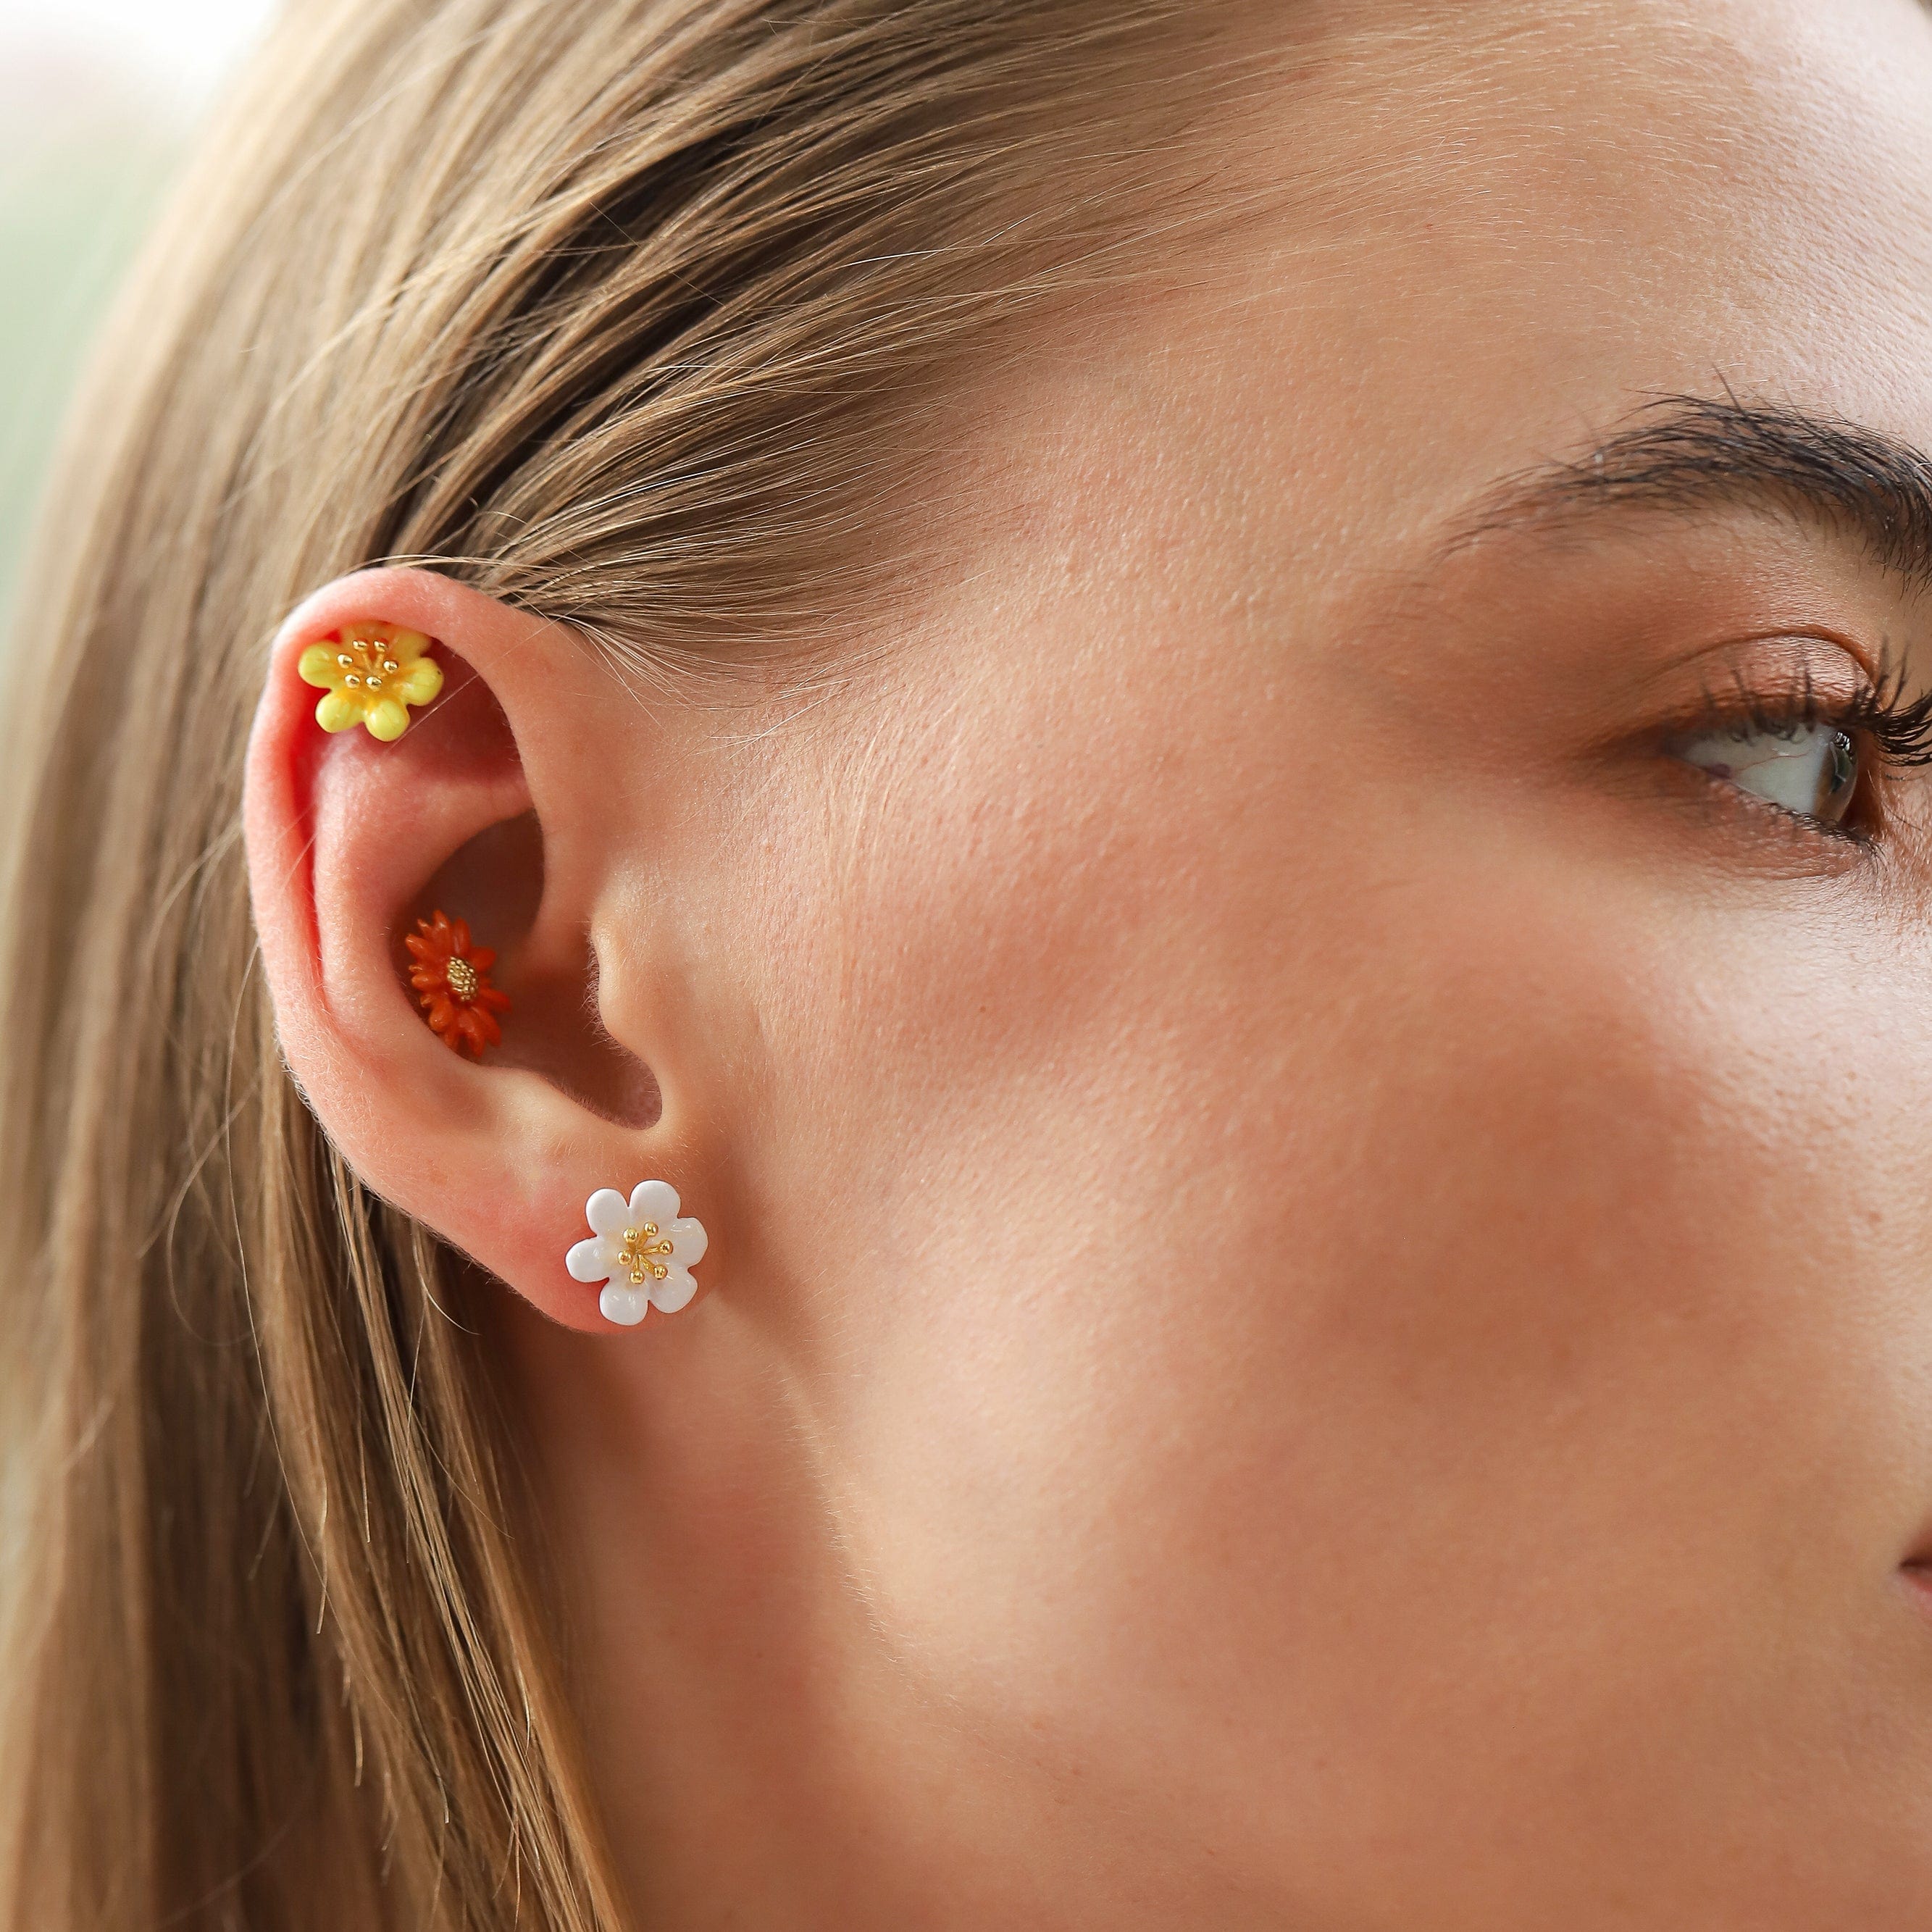 TAI JEWELRY Earrings Enamel Flower Studs